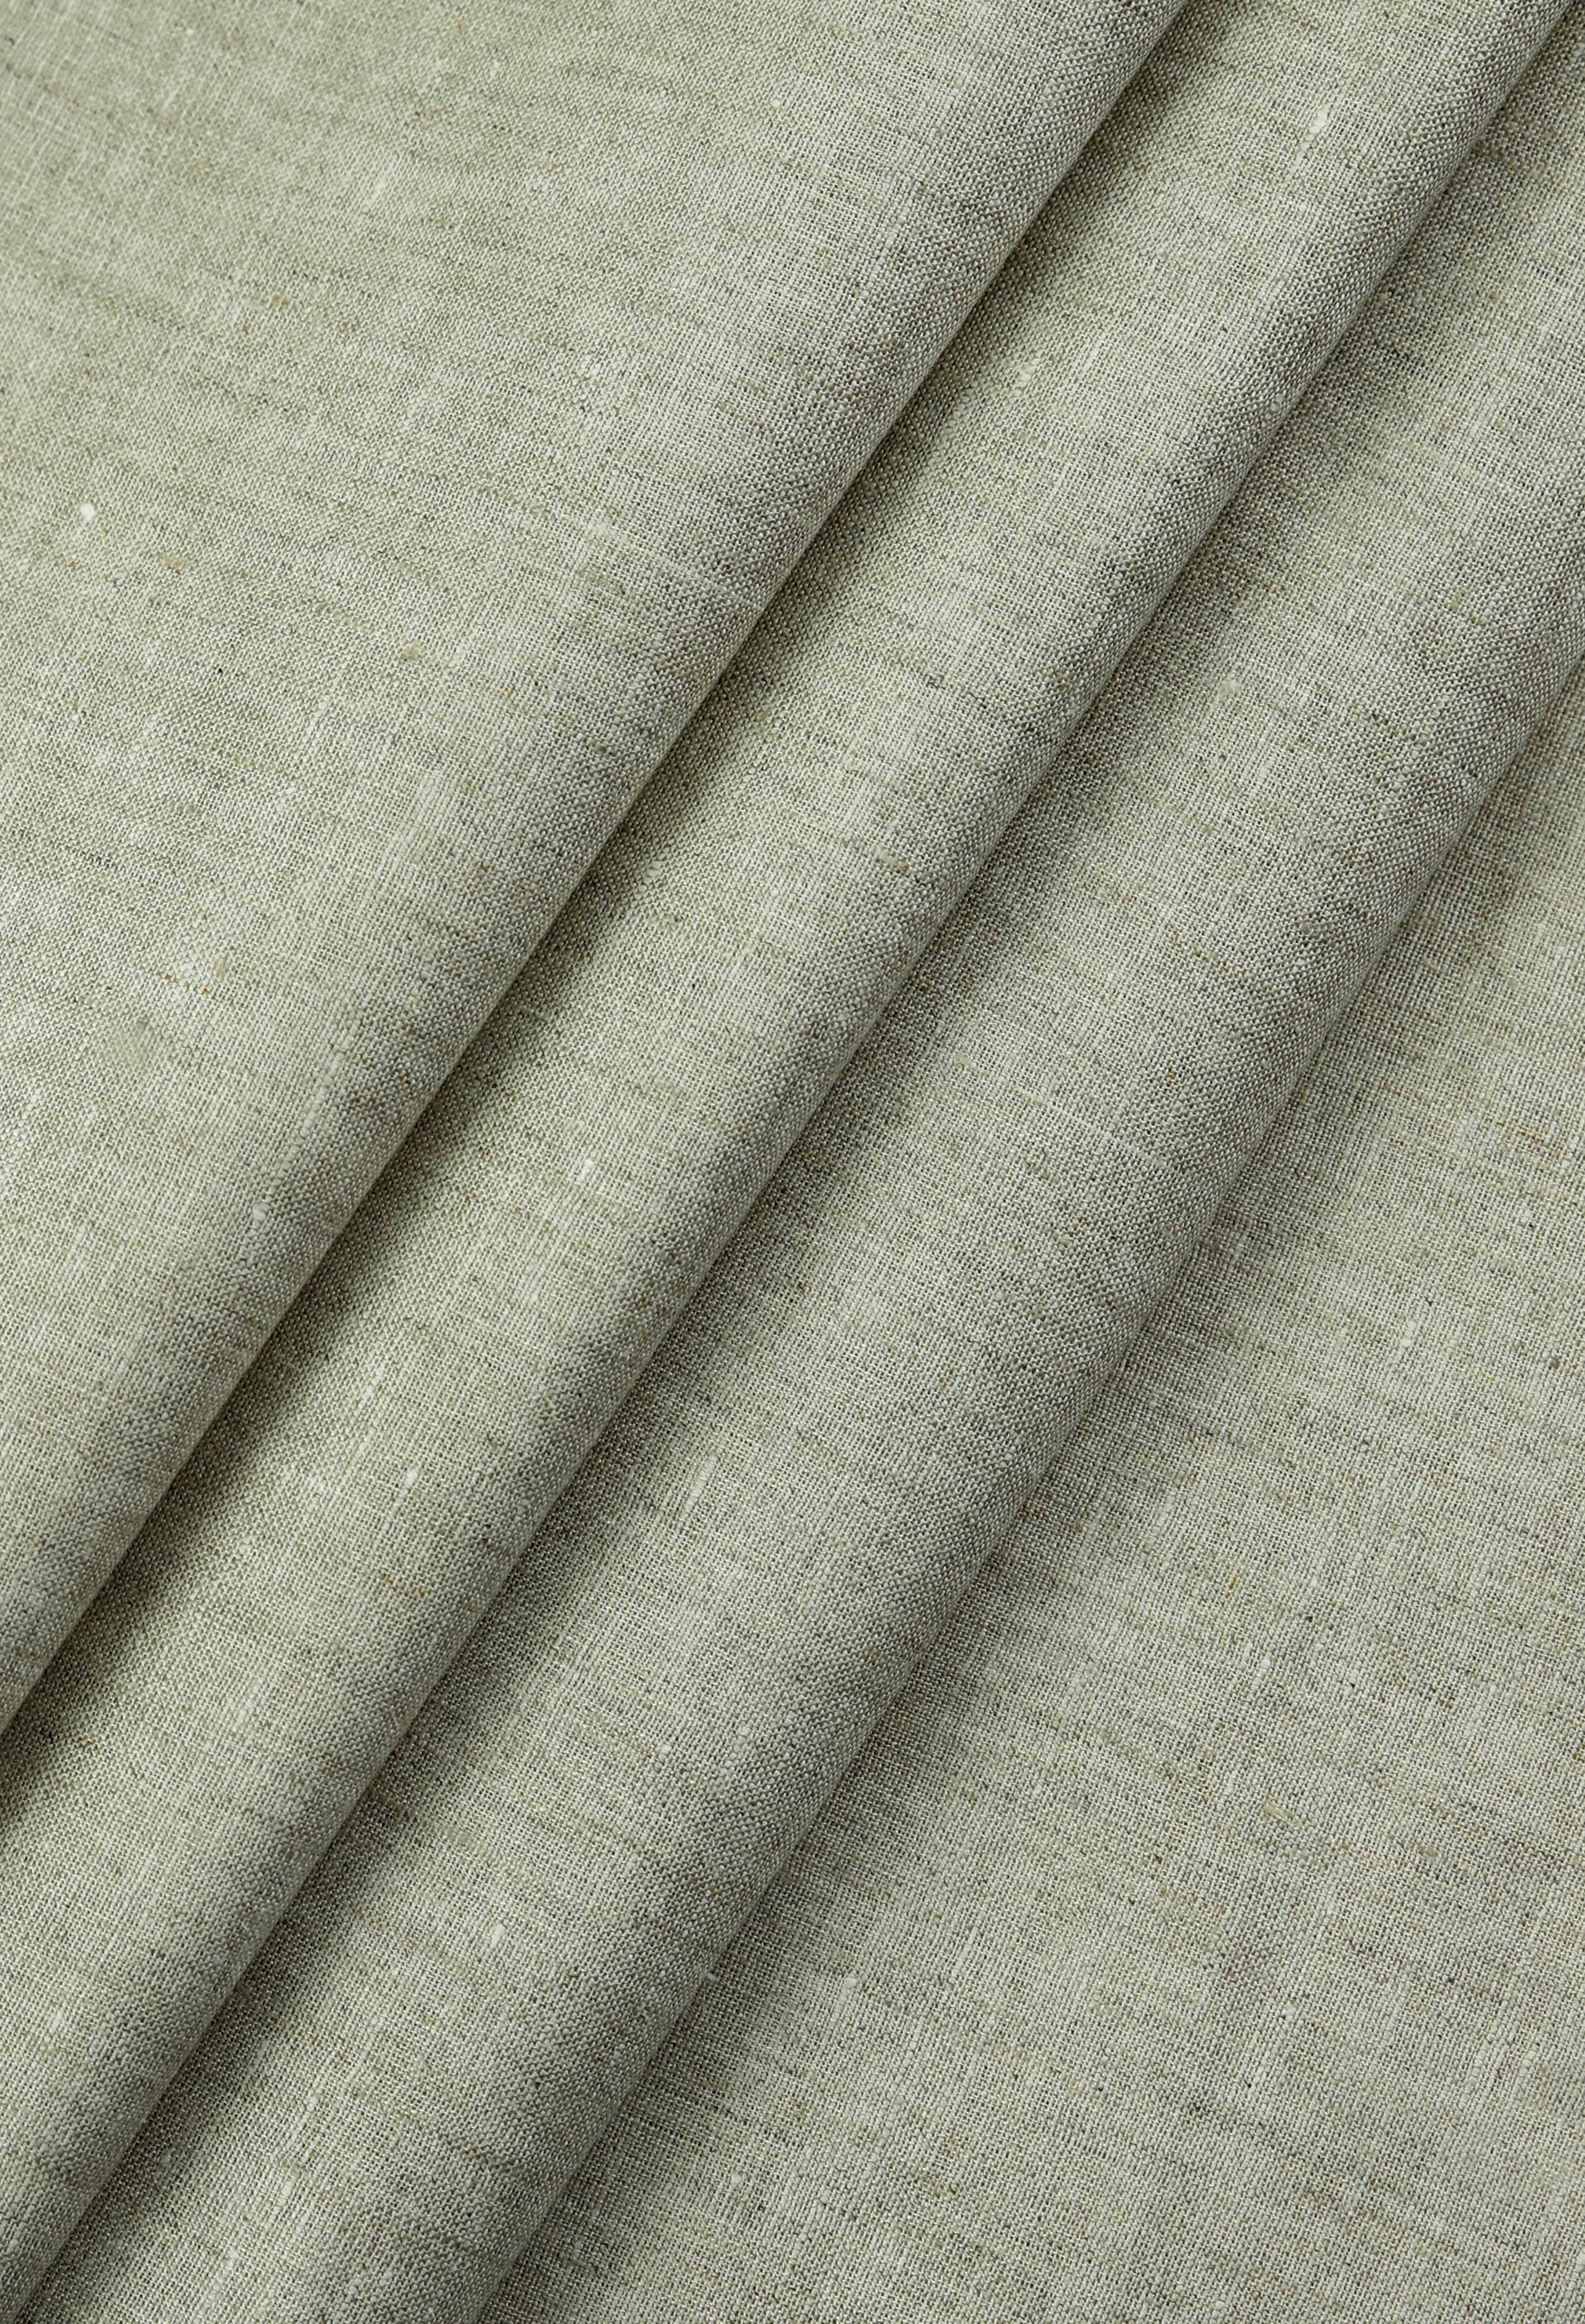 Tan Brown Linen (TH-000674)